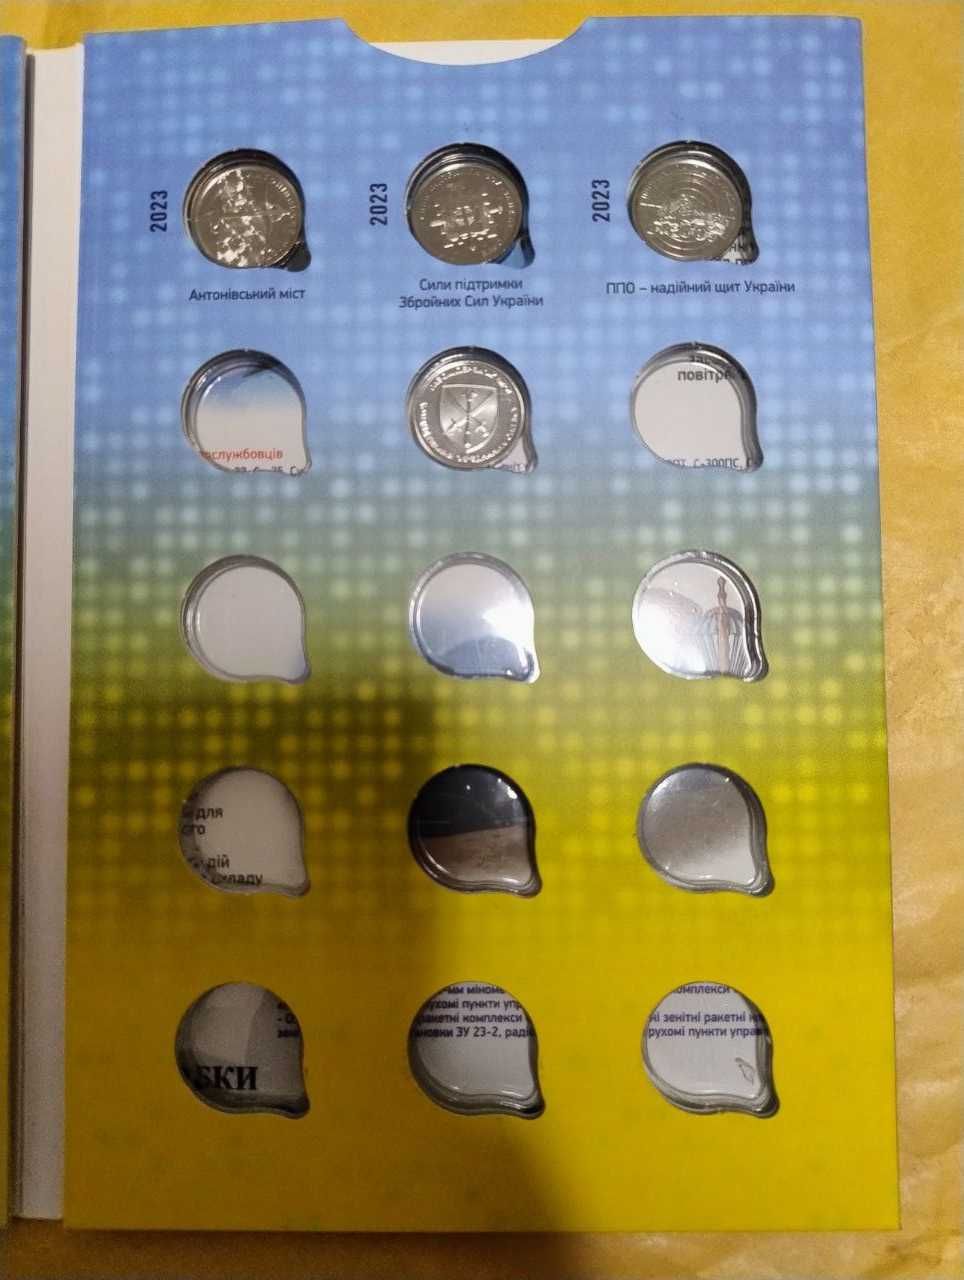 Повний набір   10 грн монет  (19шт набор) ЗСУ в капсулах